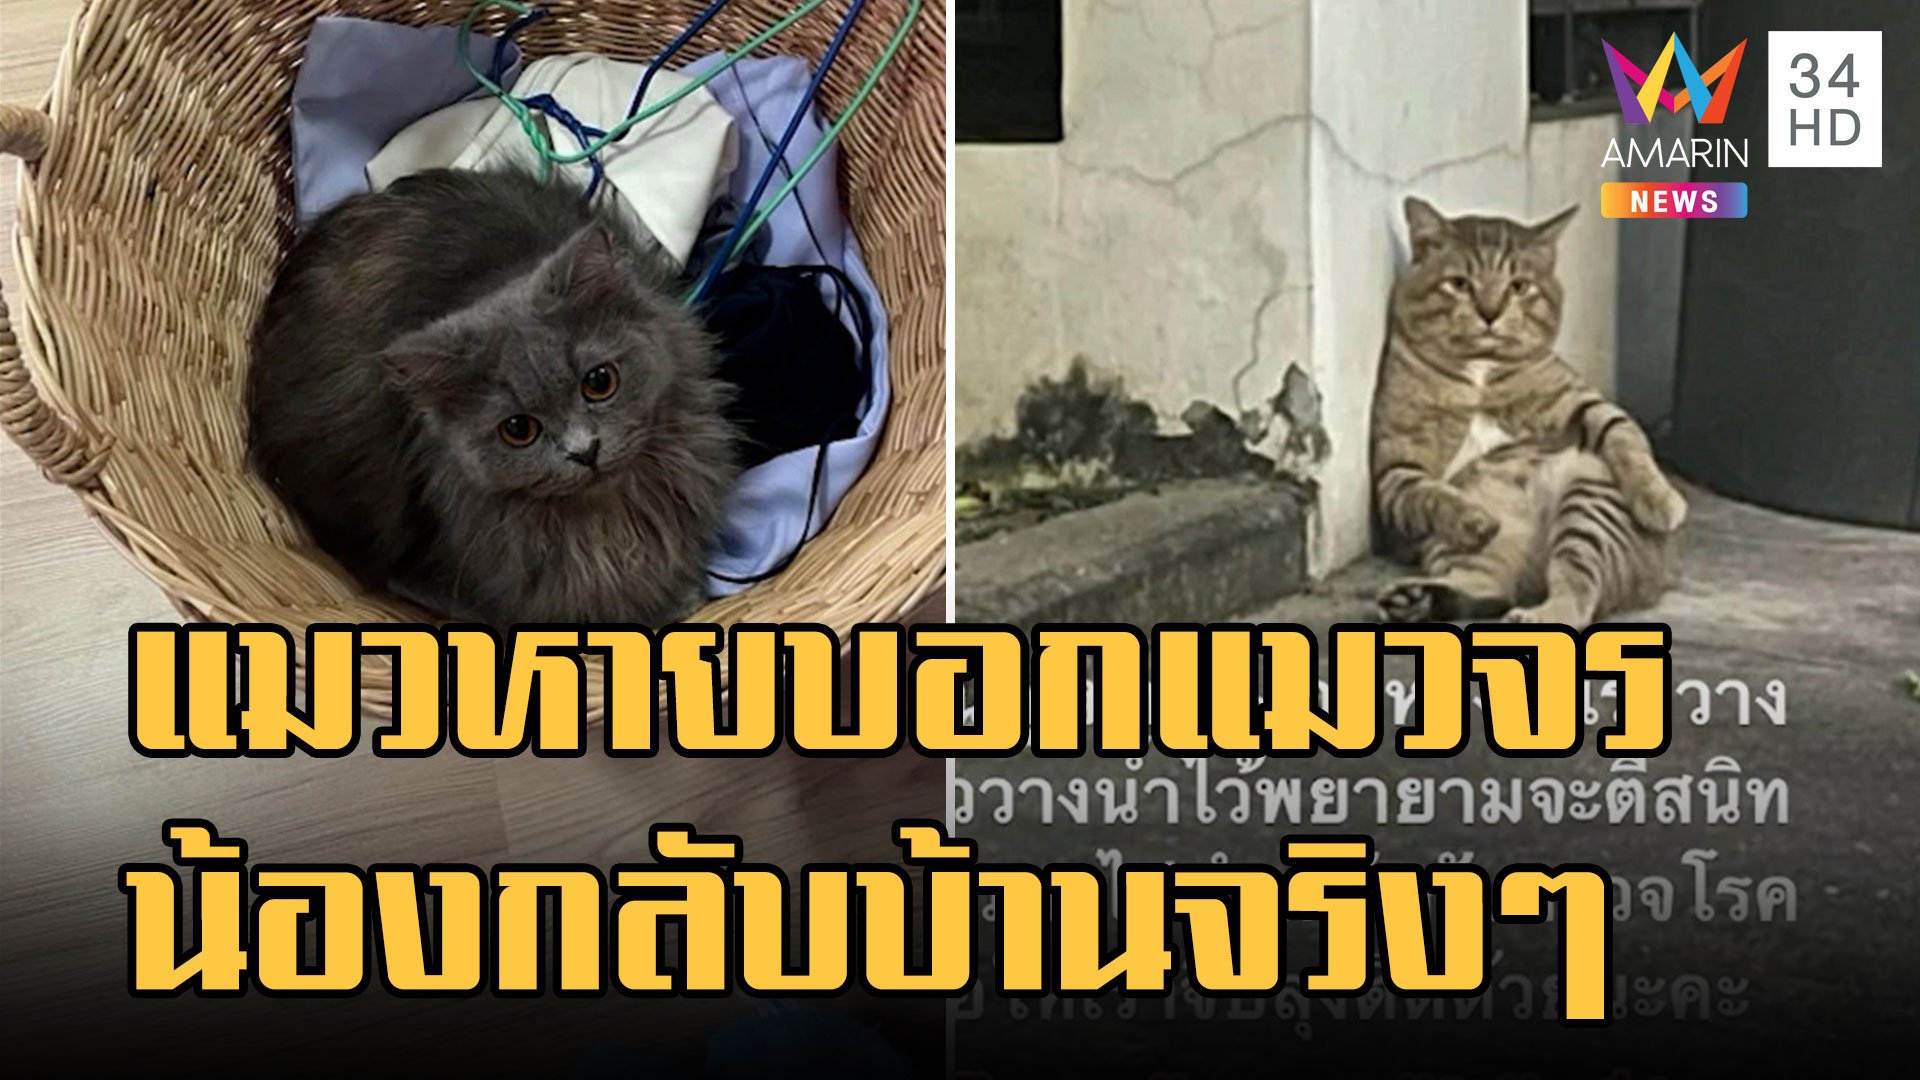 แมวหายจากบ้าน ชาวเน็ตบอกให้บอกแมวจร สุดท้ายน้องกลับบ้านจริง | ข่าวอรุณอมรินทร์ | 19 ต.ค. 65 | AMARIN TVHD34